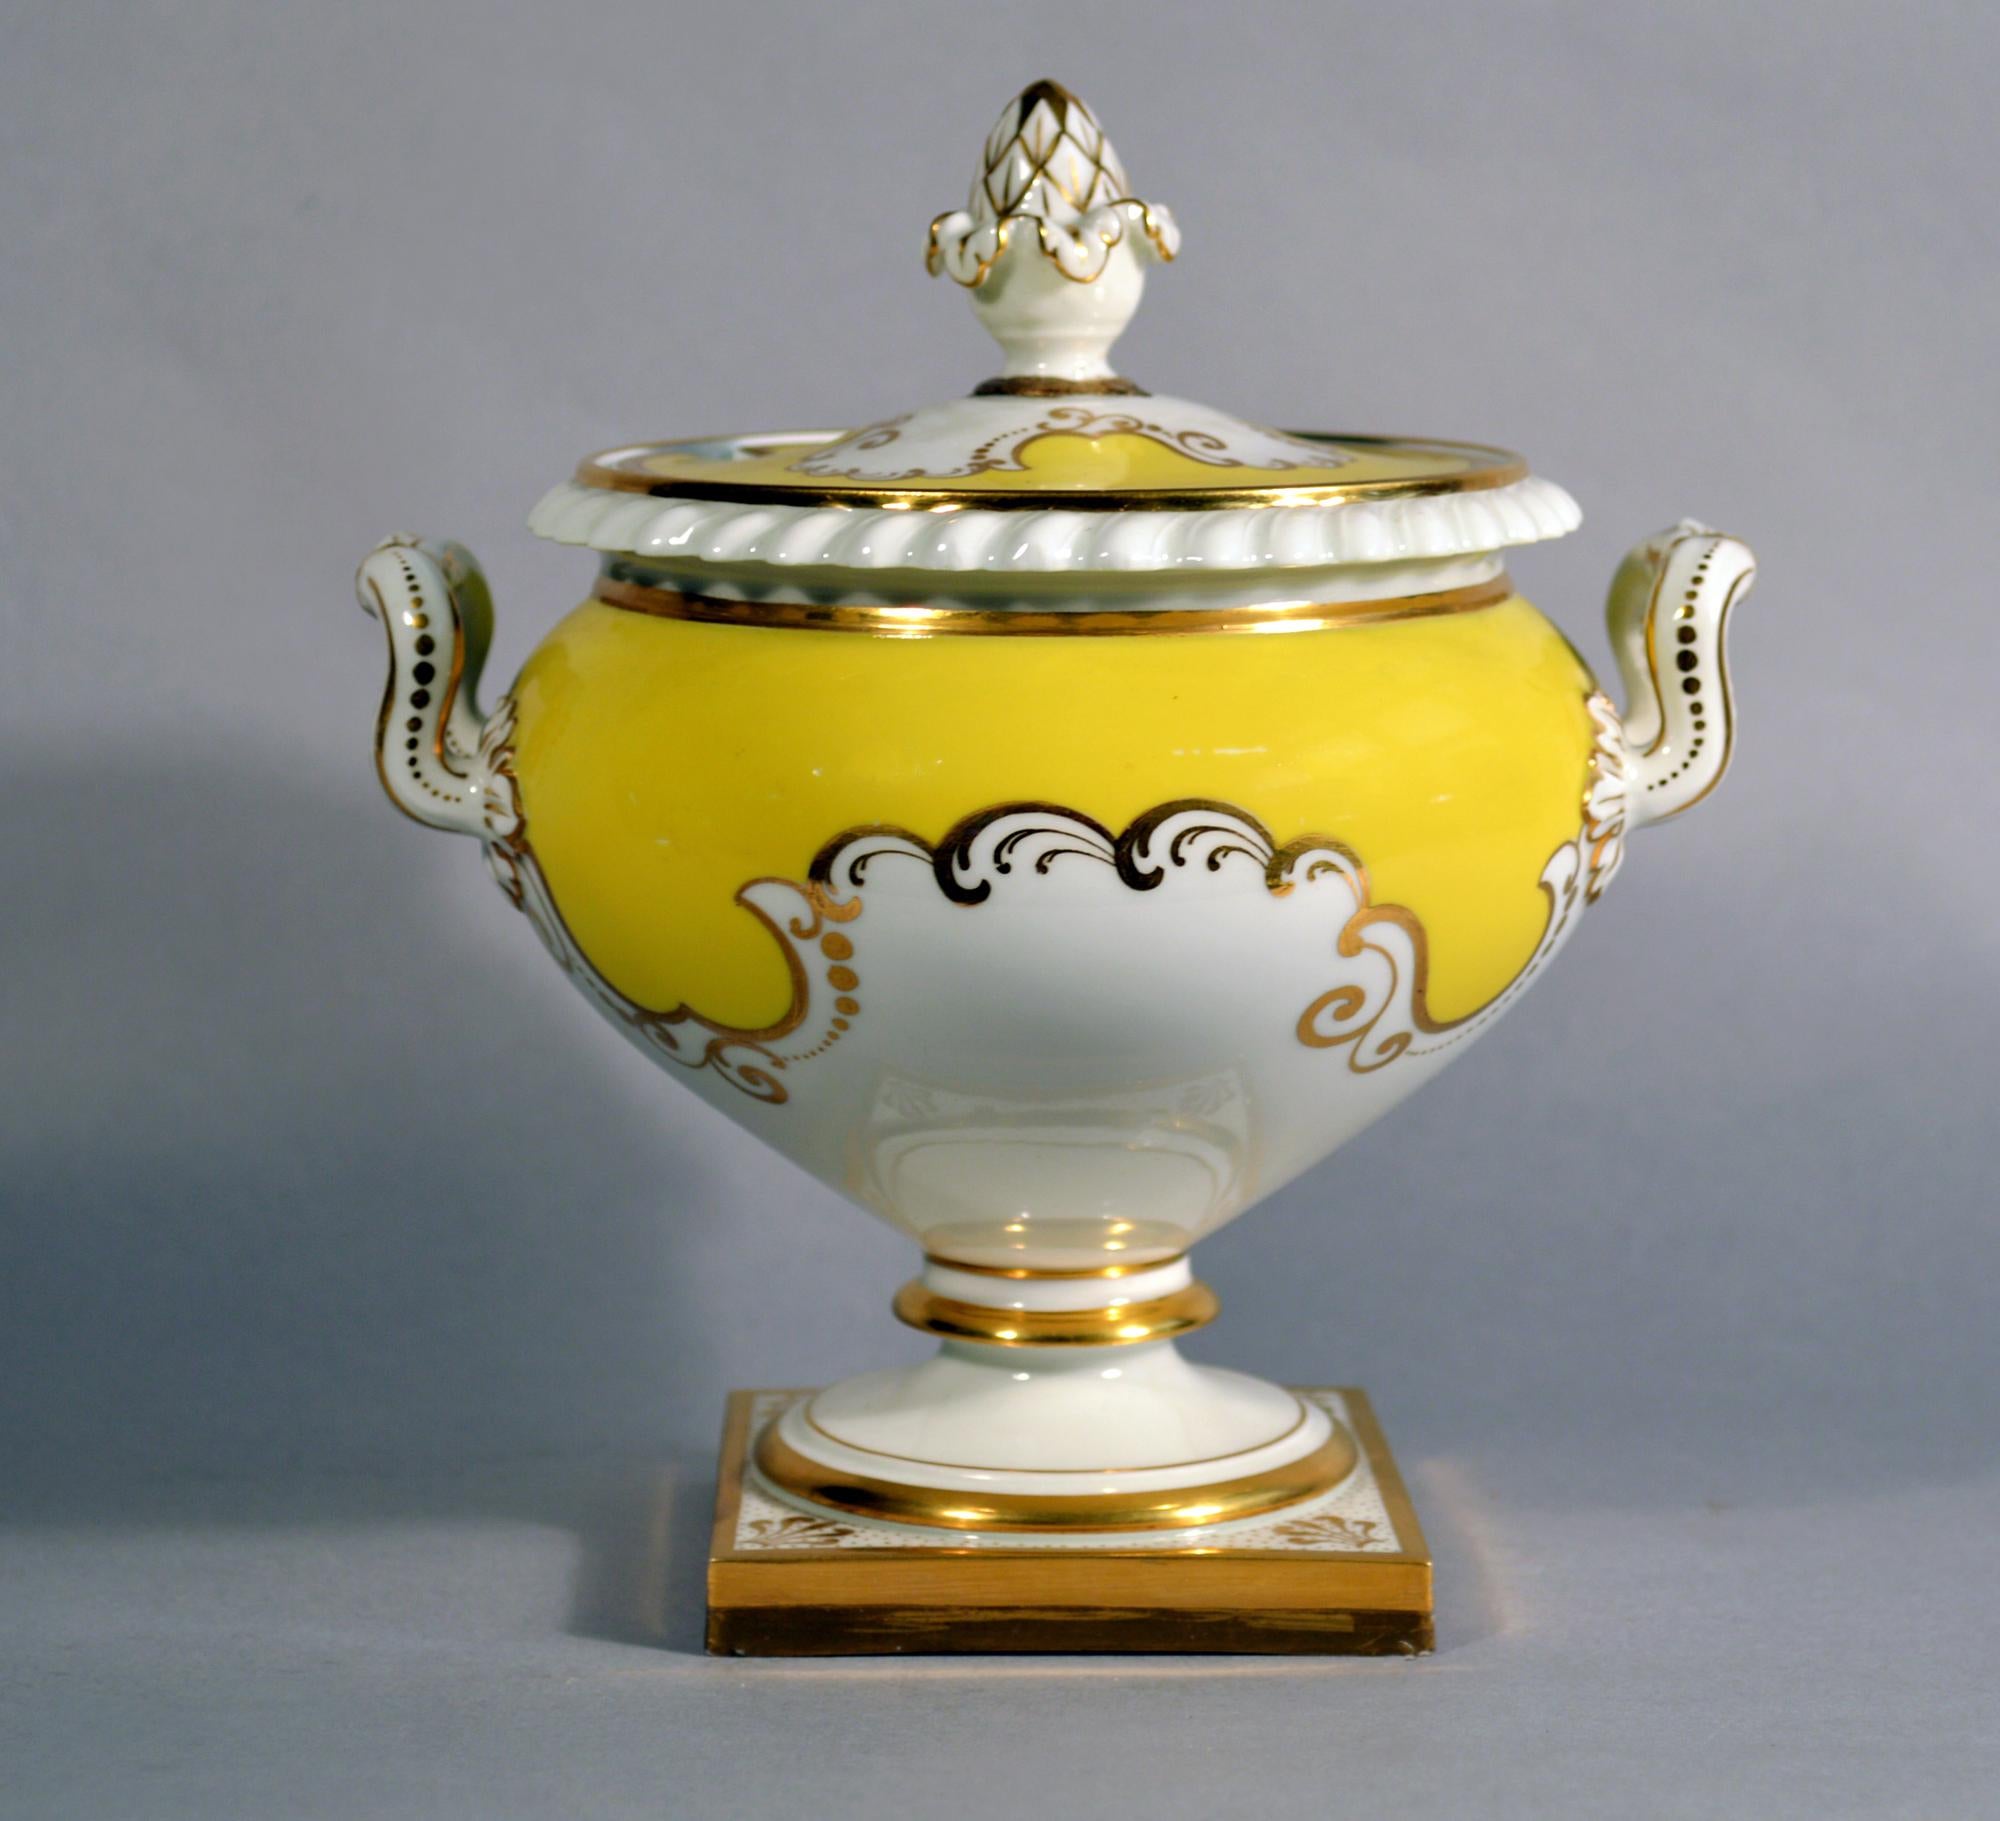 Soupière et couvercle pour sauce jaune en porcelaine de Worcester Flight, Barr & Barr,
Vers 1825.

La soupière est peinte d'un fond jaune et de rinceaux dorés et repose sur une base carrée dont chaque coin est peint d'une coquille dorée. La